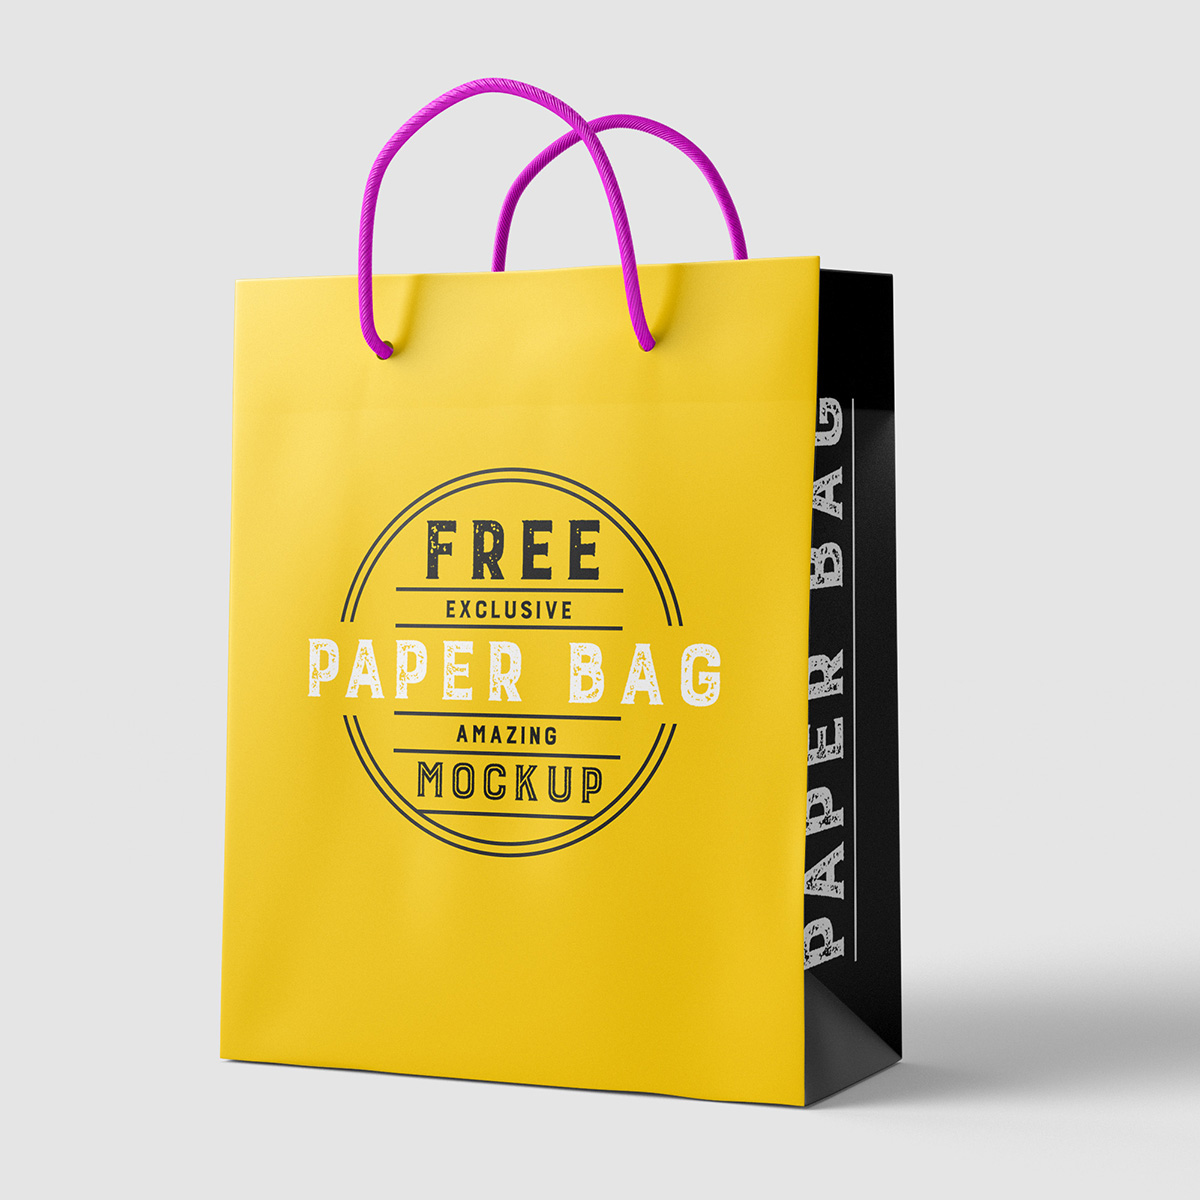 Download Free paper bag mockup on Behance